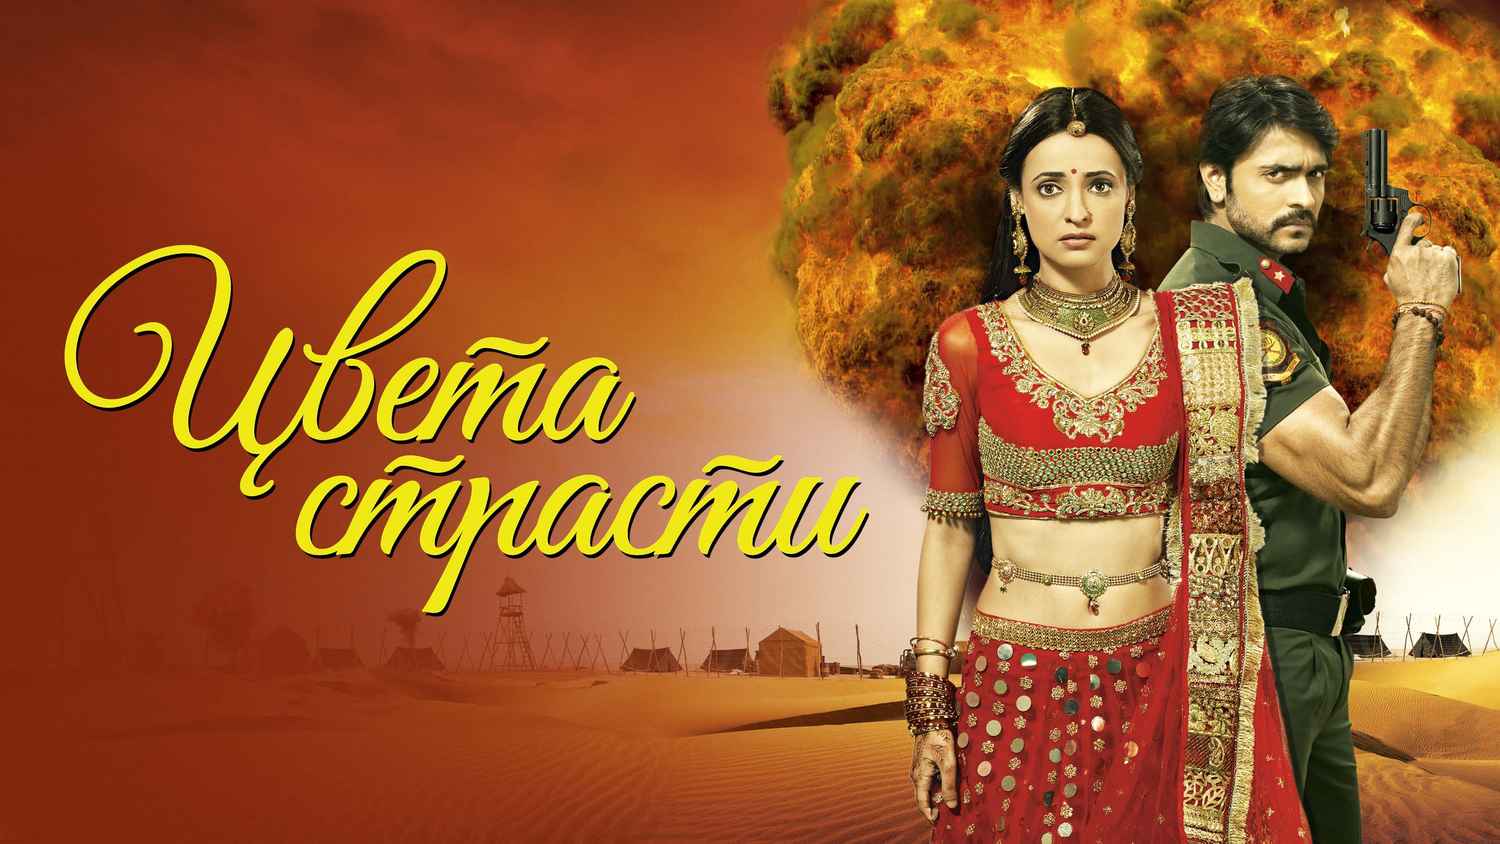 Watch Rangrasiya Season 1 Episode 31 : Rudra Returns Home With Parvati -  Watch Full Episode Online(HD) On JioCinema